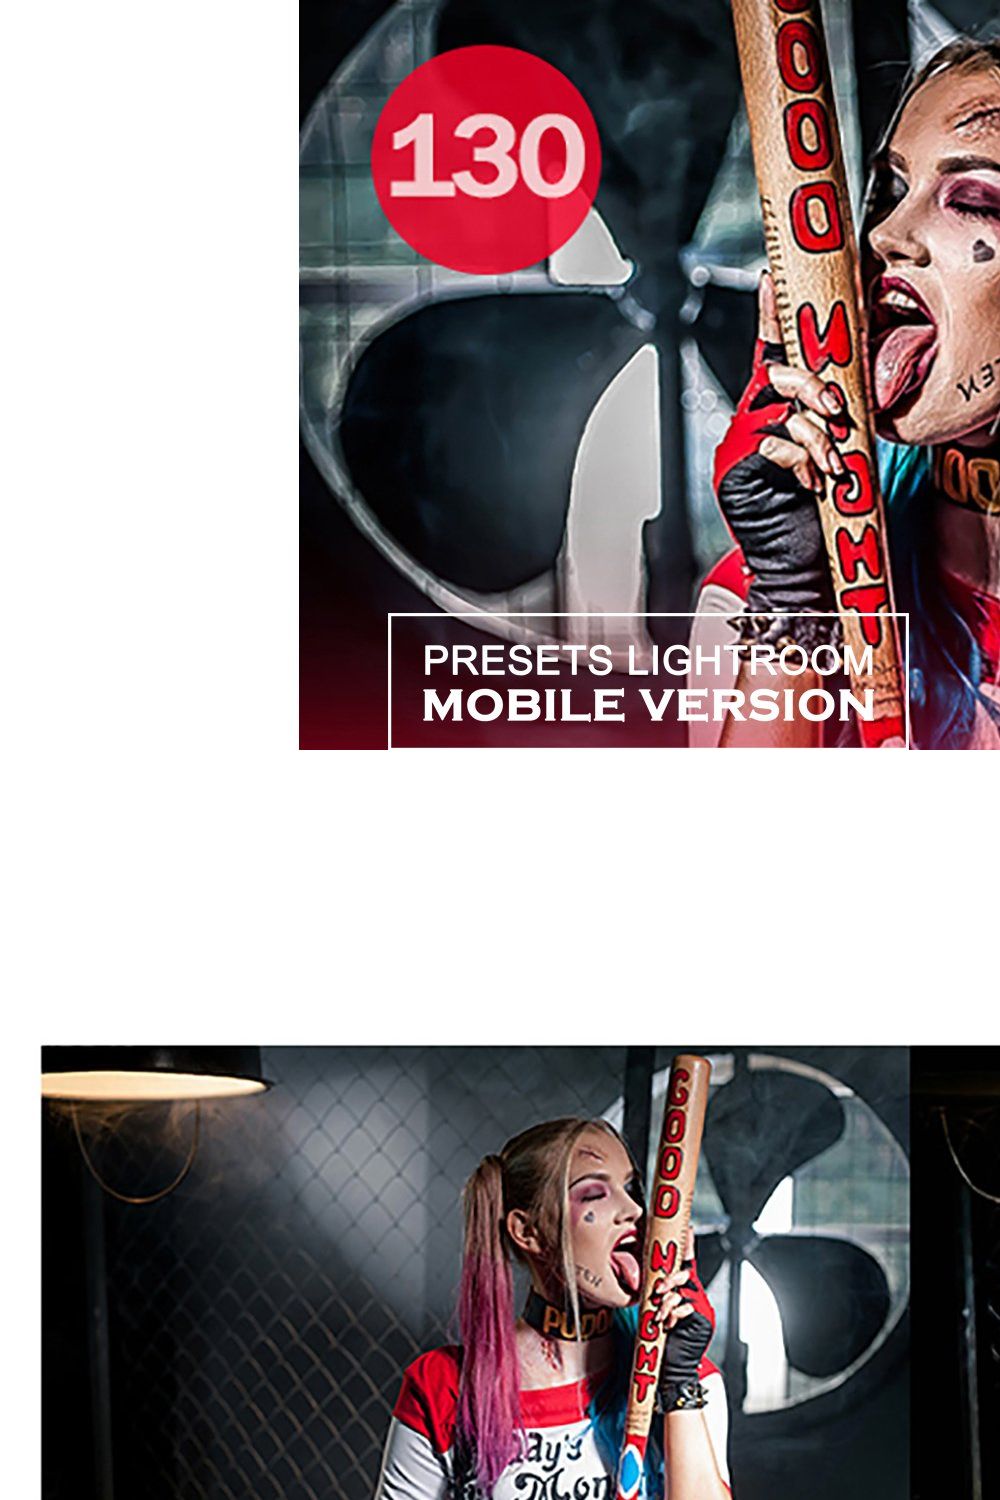 HDR Lightroom Mobile Presets pinterest preview image.